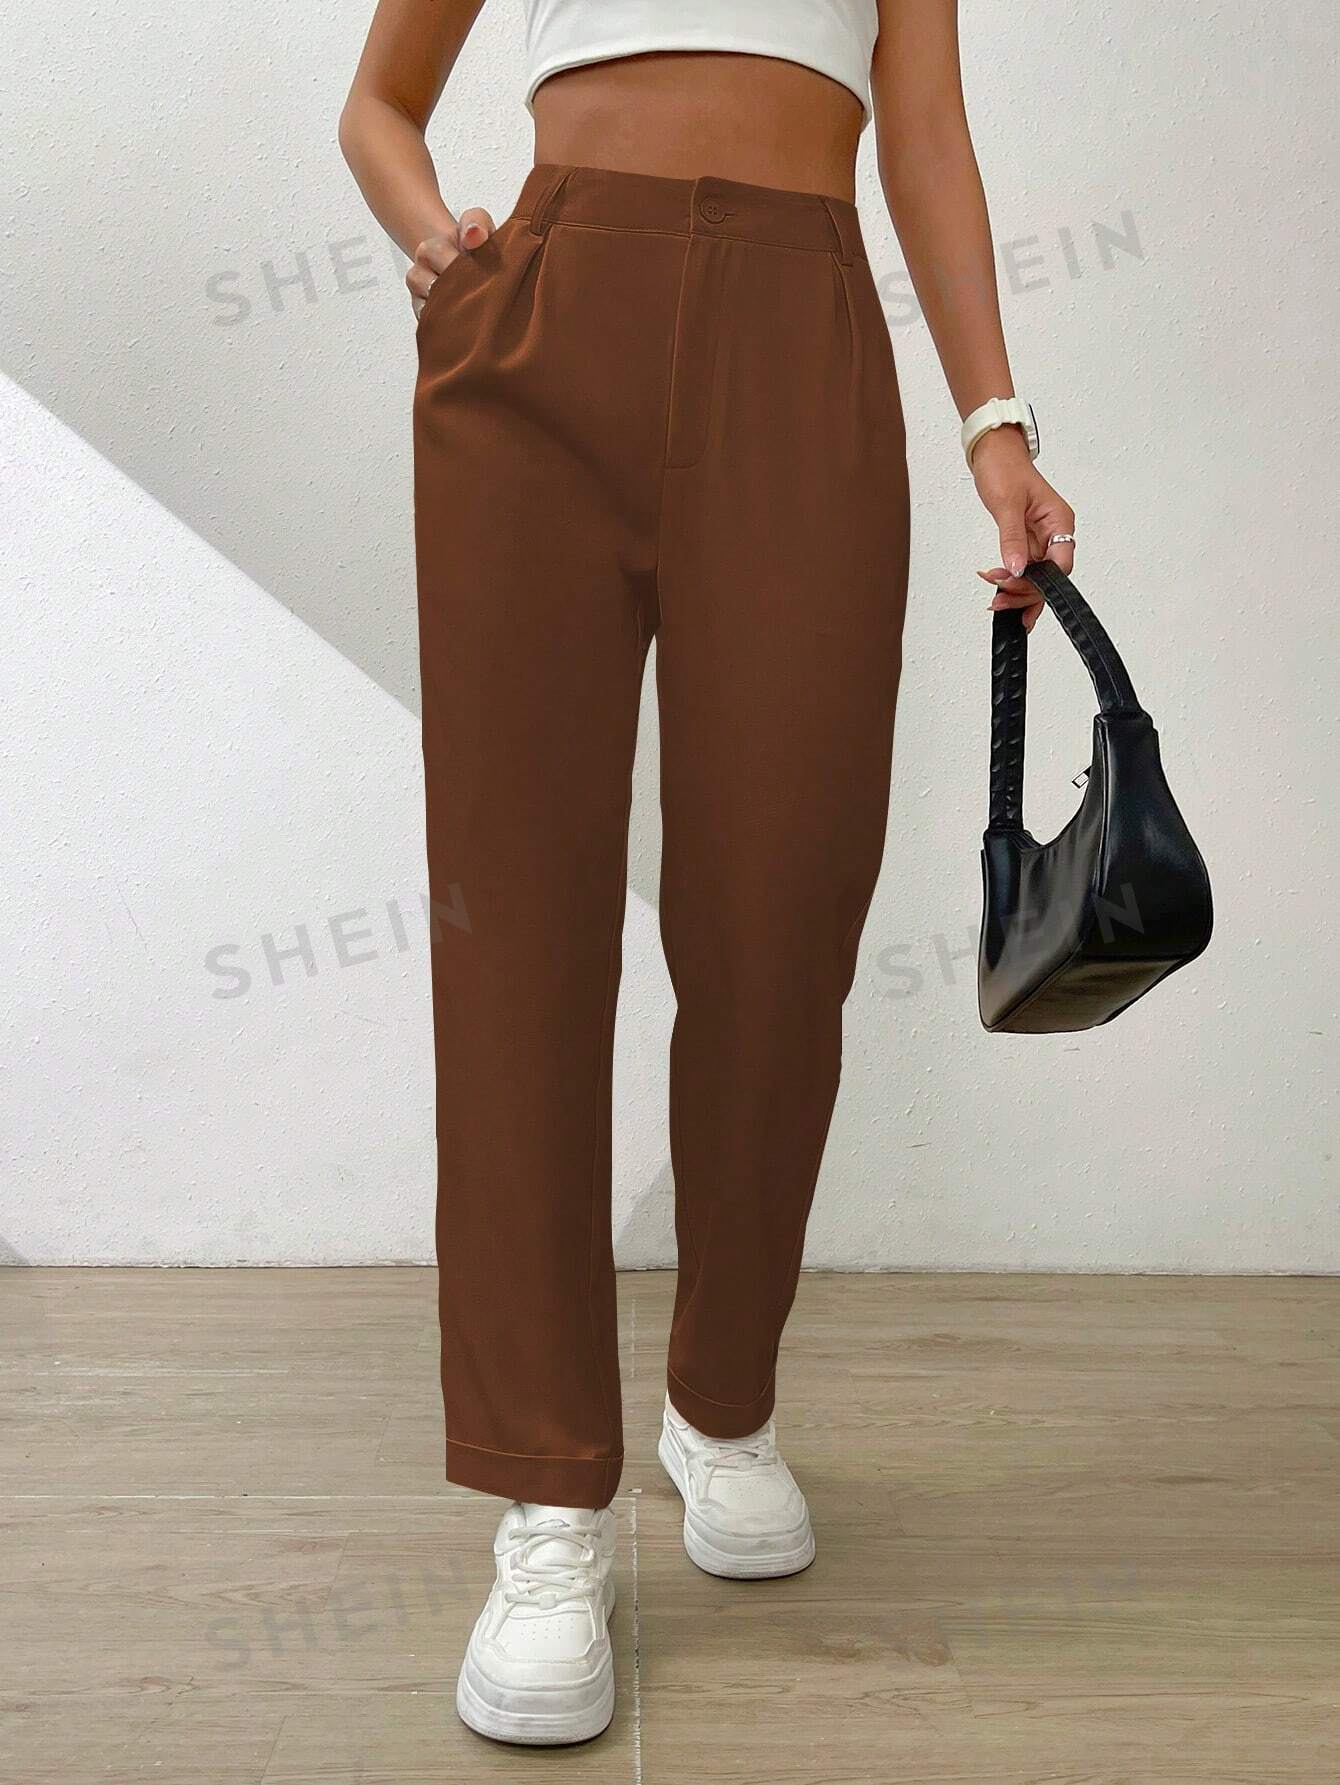 SHEIN Essnce Однотонные широкие брюки со складками и наклонными карманами, мокко браун брюки женские прямые с карманами цвет – черный